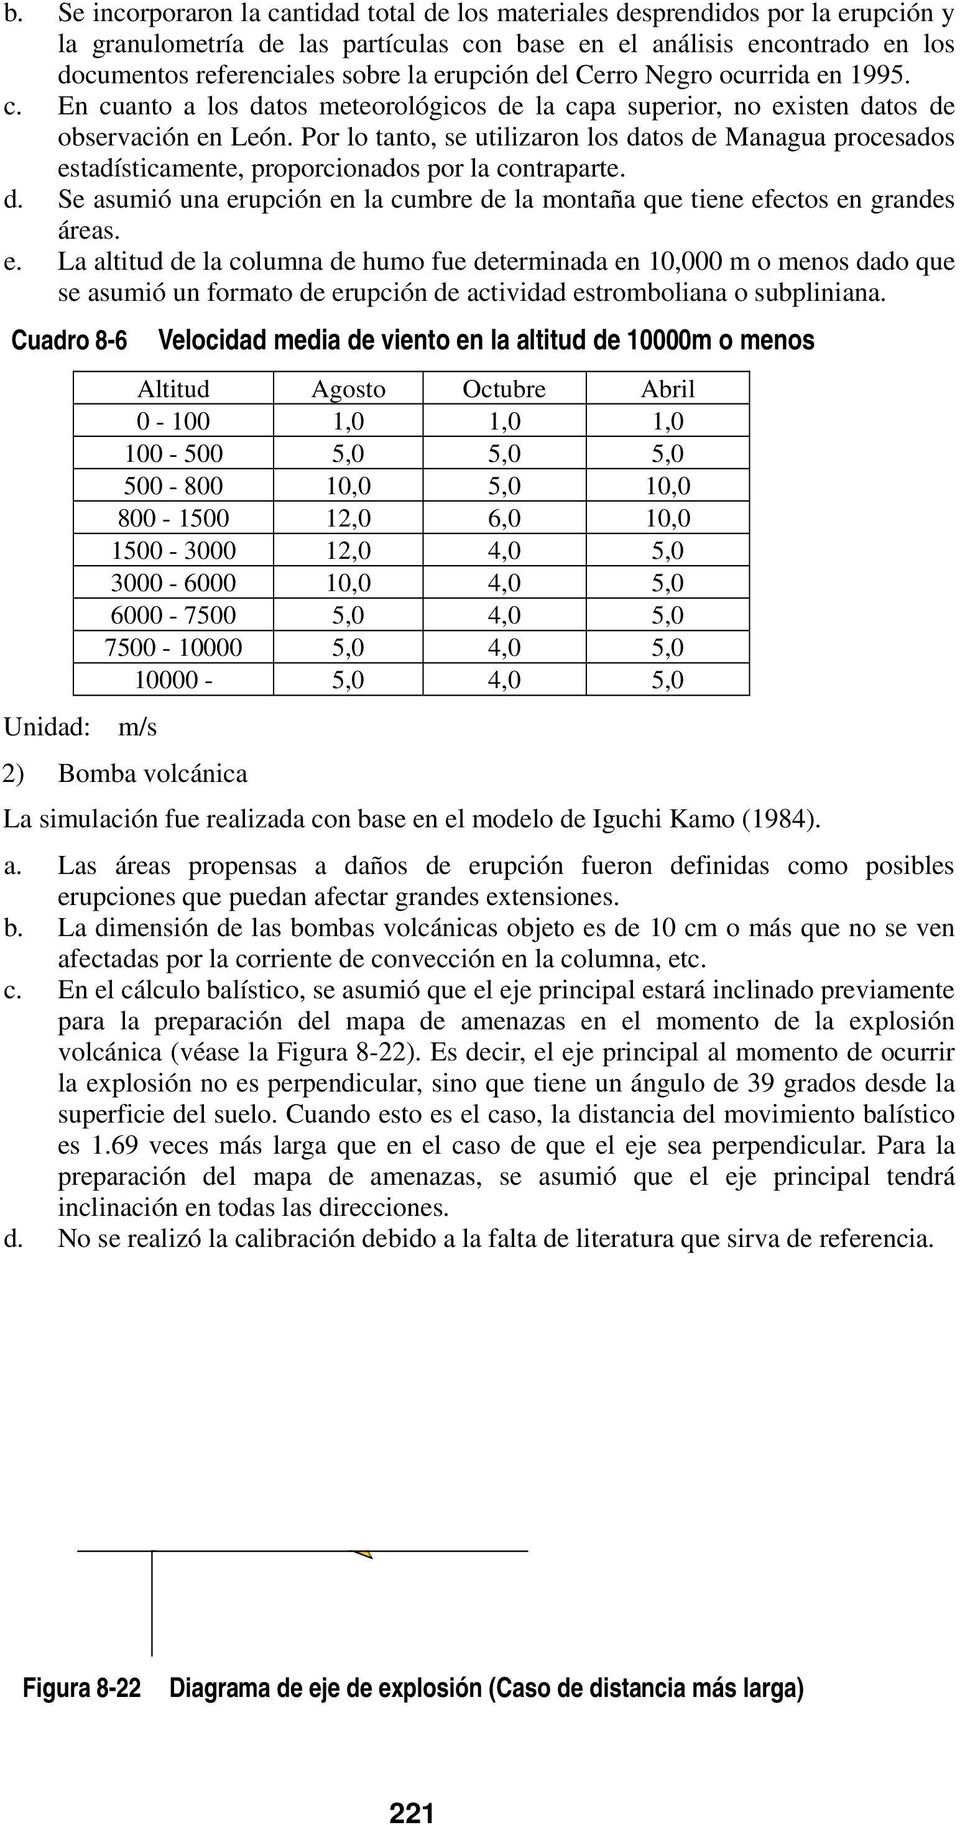 Por lo tanto, se utilizaron los datos de Managua procesados estadísticamente, proporcionados por la contraparte. d. Se asumió una erupción en la cumbre de la montaña que tiene efectos en grandes áreas.